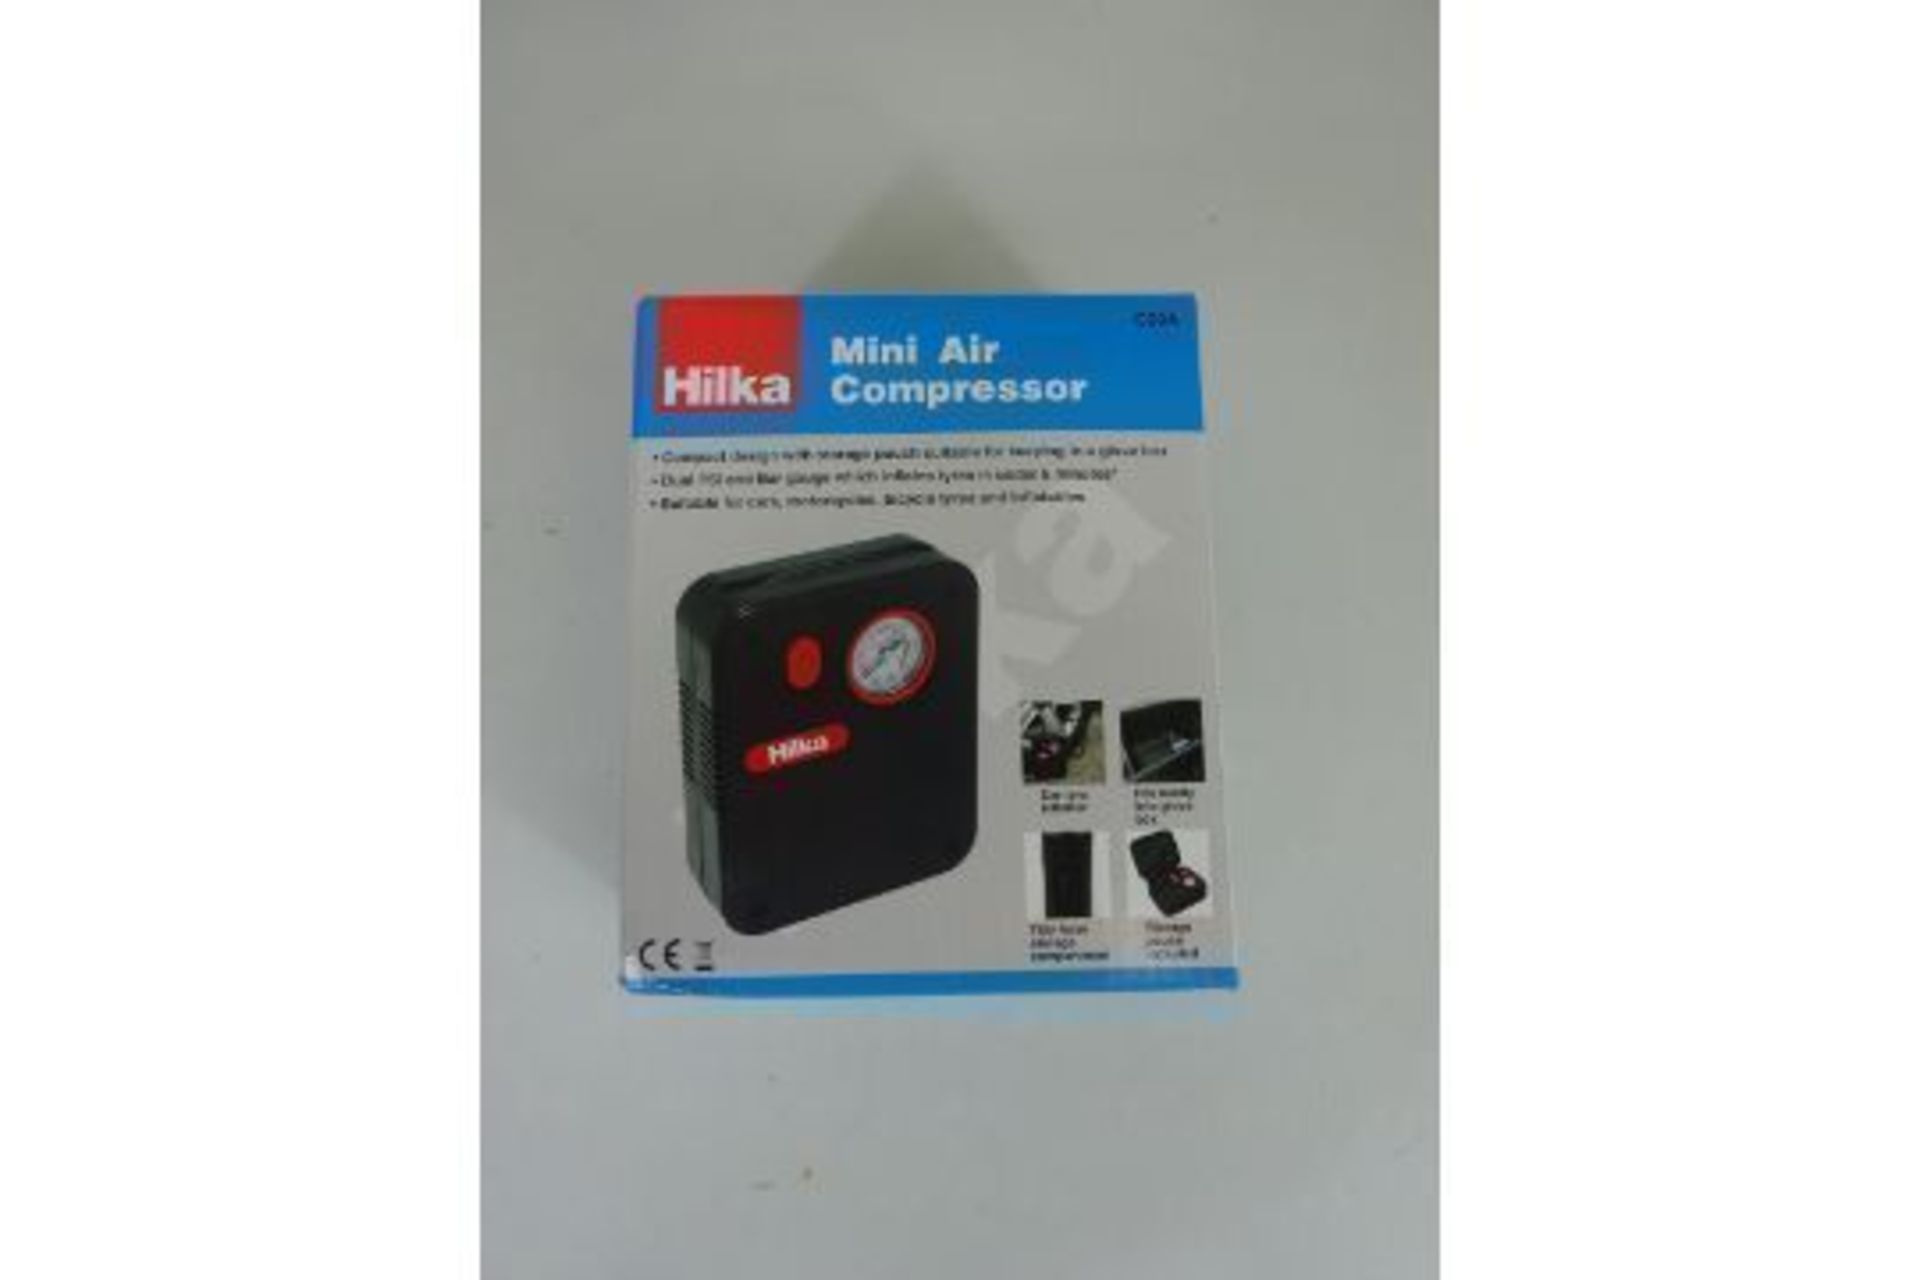 New Hilka Mini Air Compressor